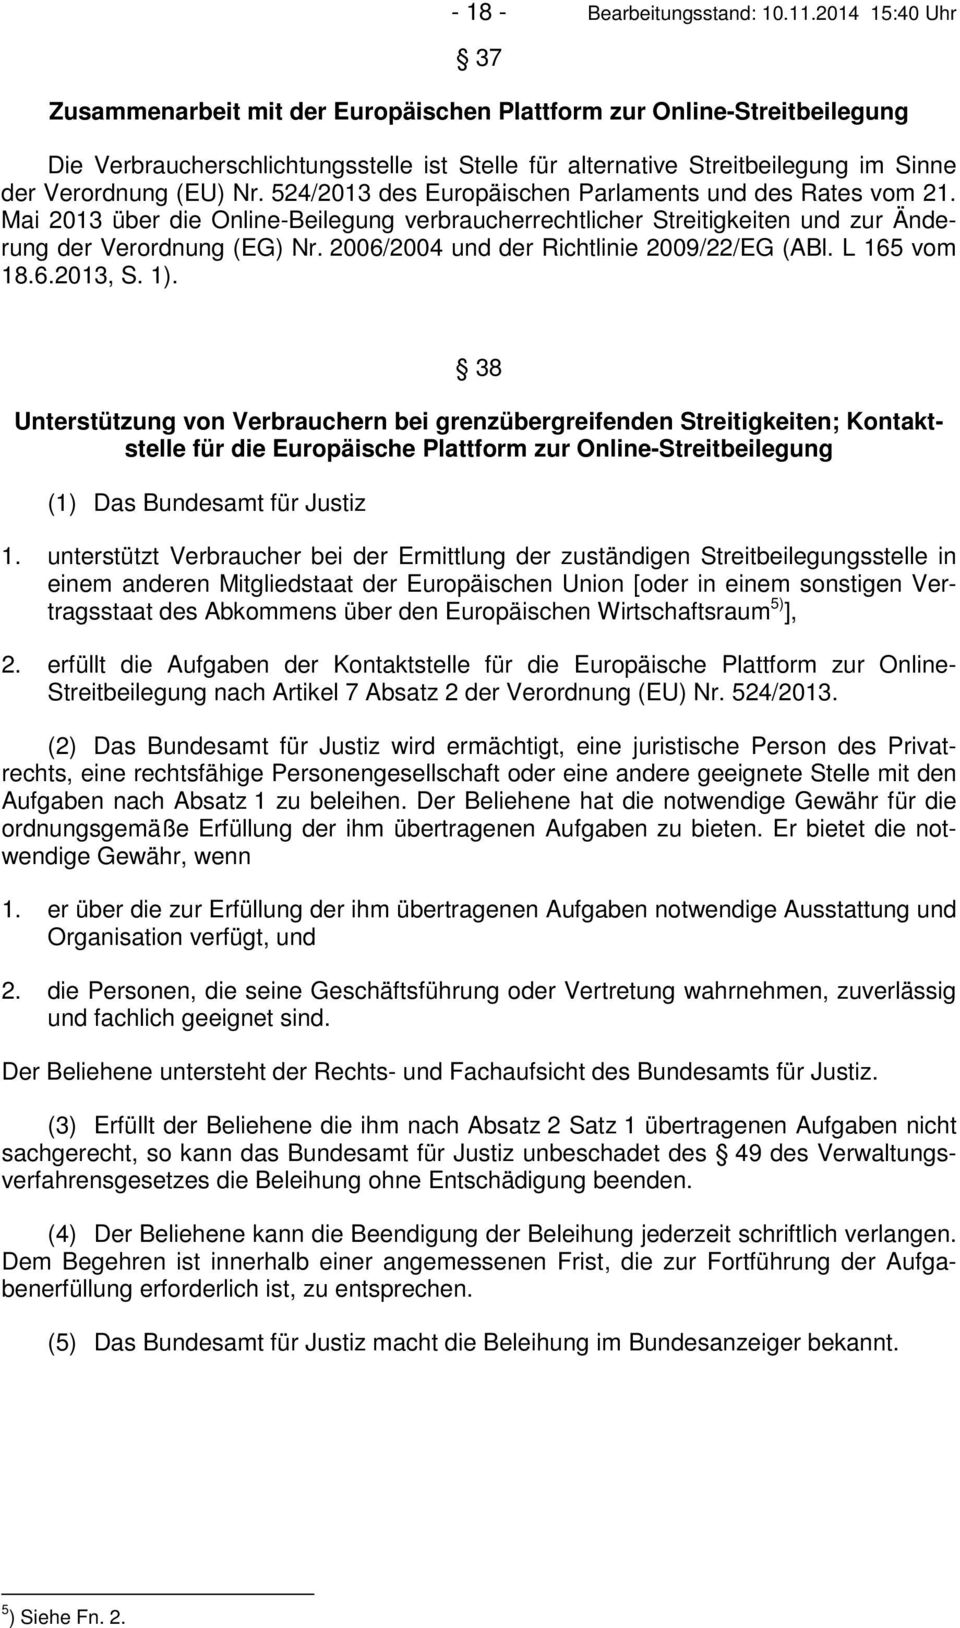 524/2013 des Europäischen Parlaments und des Rates vom 21. Mai 2013 über die Online-Beilegung verbraucherrechtlicher Streitigkeiten und zur Änderung der Verordnung (EG) Nr.